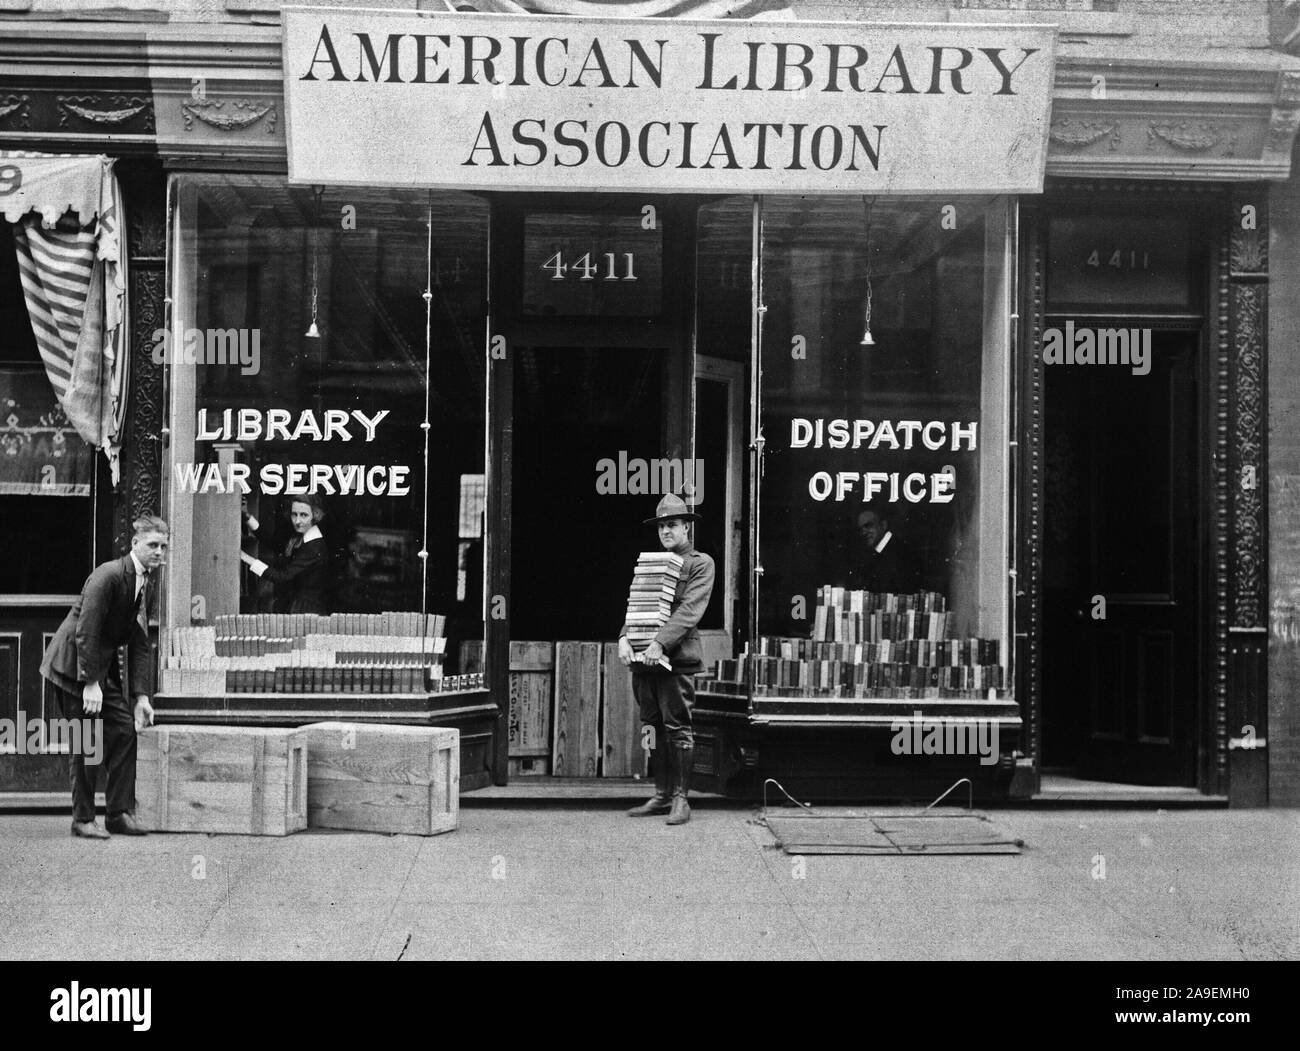 1918 - American Library Association liefert Männer in Service mit Büchern. Der Versand von der American Library Association, Krieg Service Branch, in Brooklyn, N.Y., aus denen Bücher zu den Lagern in diesem Bezirk geliefert werden Stockfoto